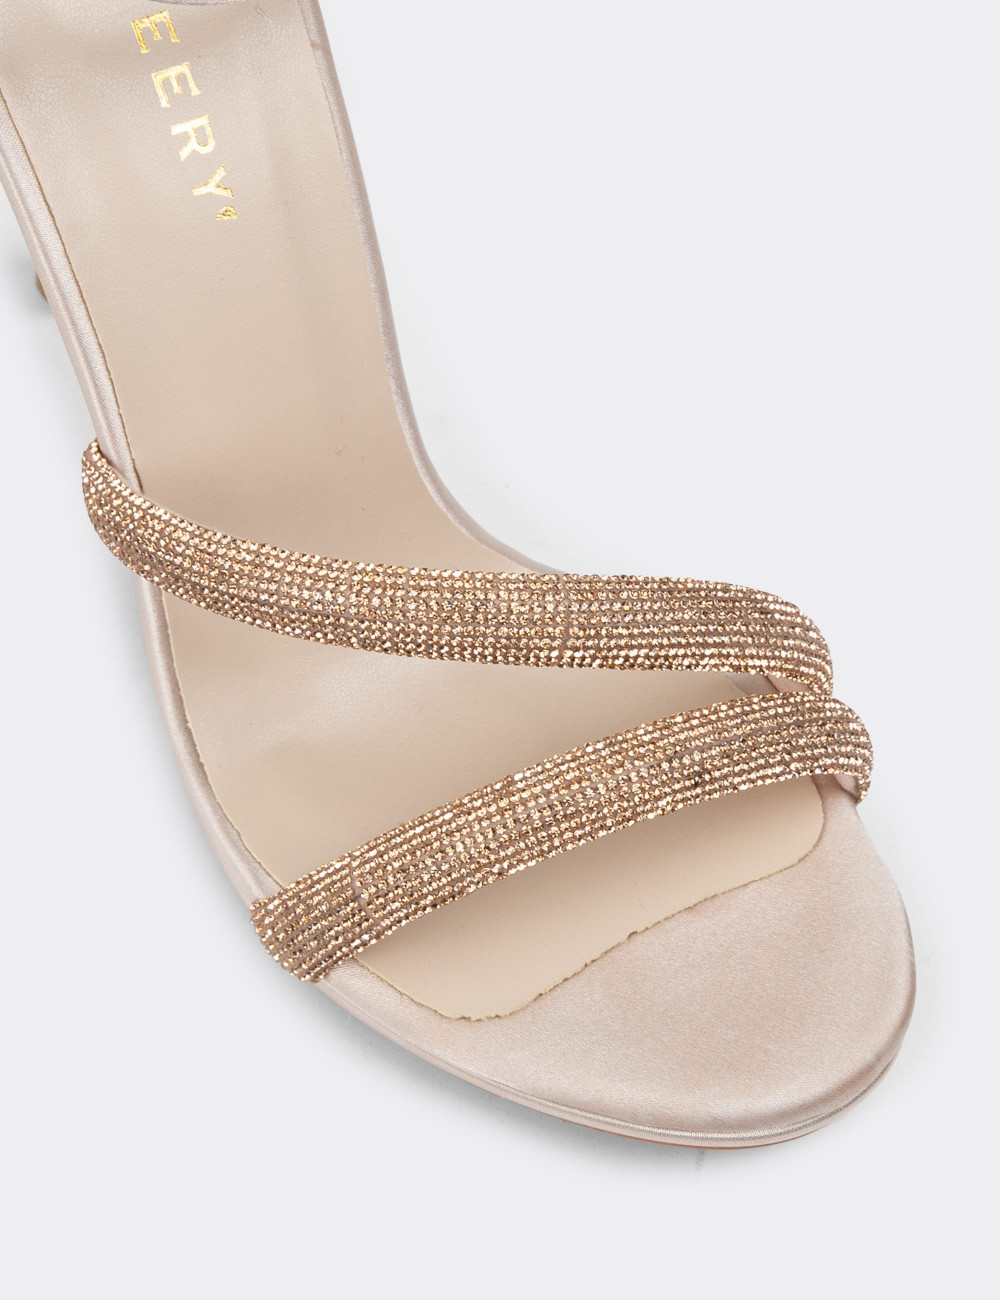 Altın Rengi Saten Topuklu Kadın Abiye Ayakkabı - H1702ZALTM01